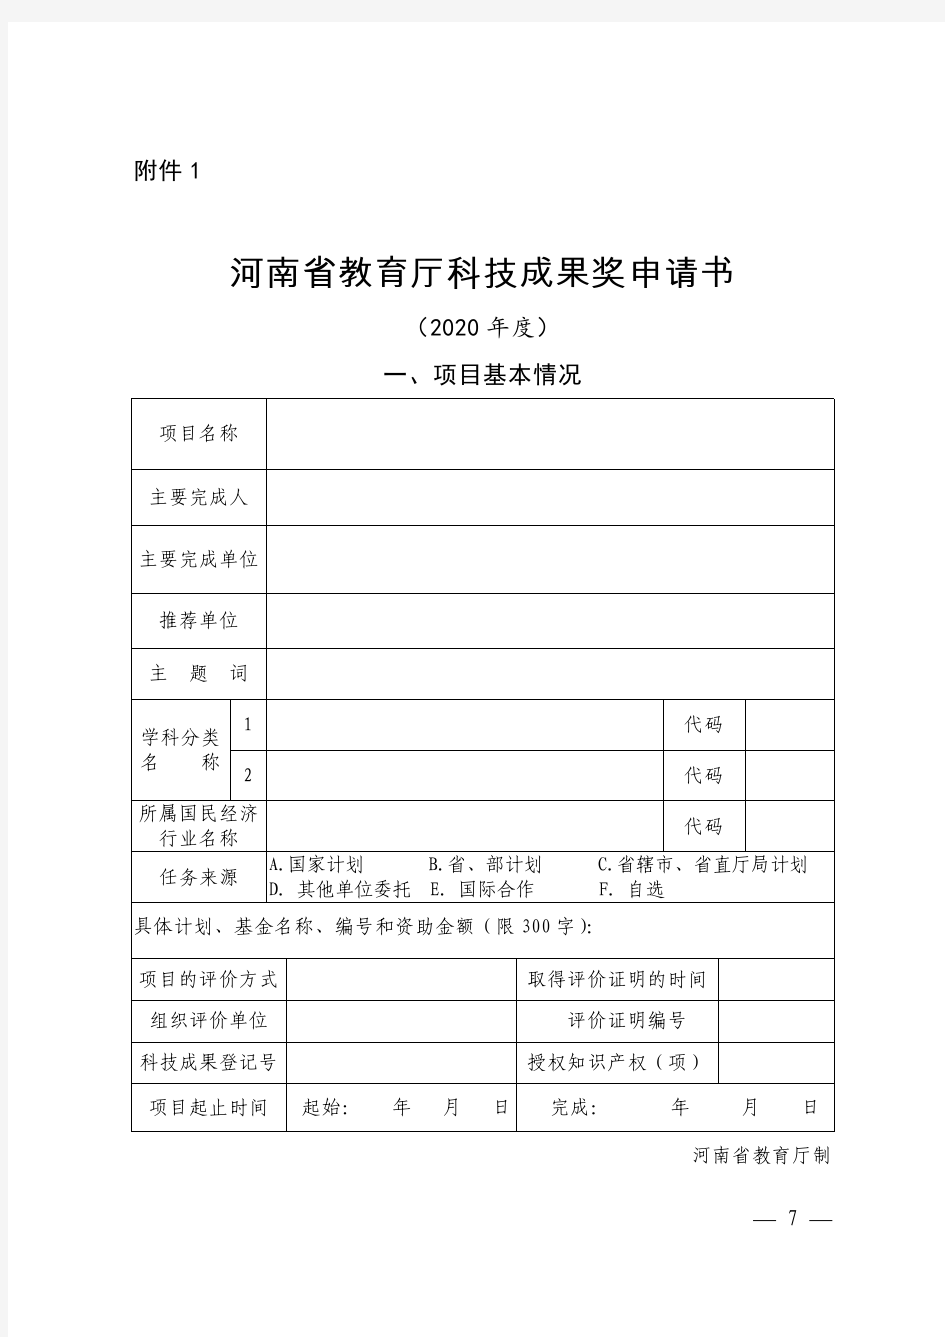 河南省教育厅科技成果奖申请书(2020年度)